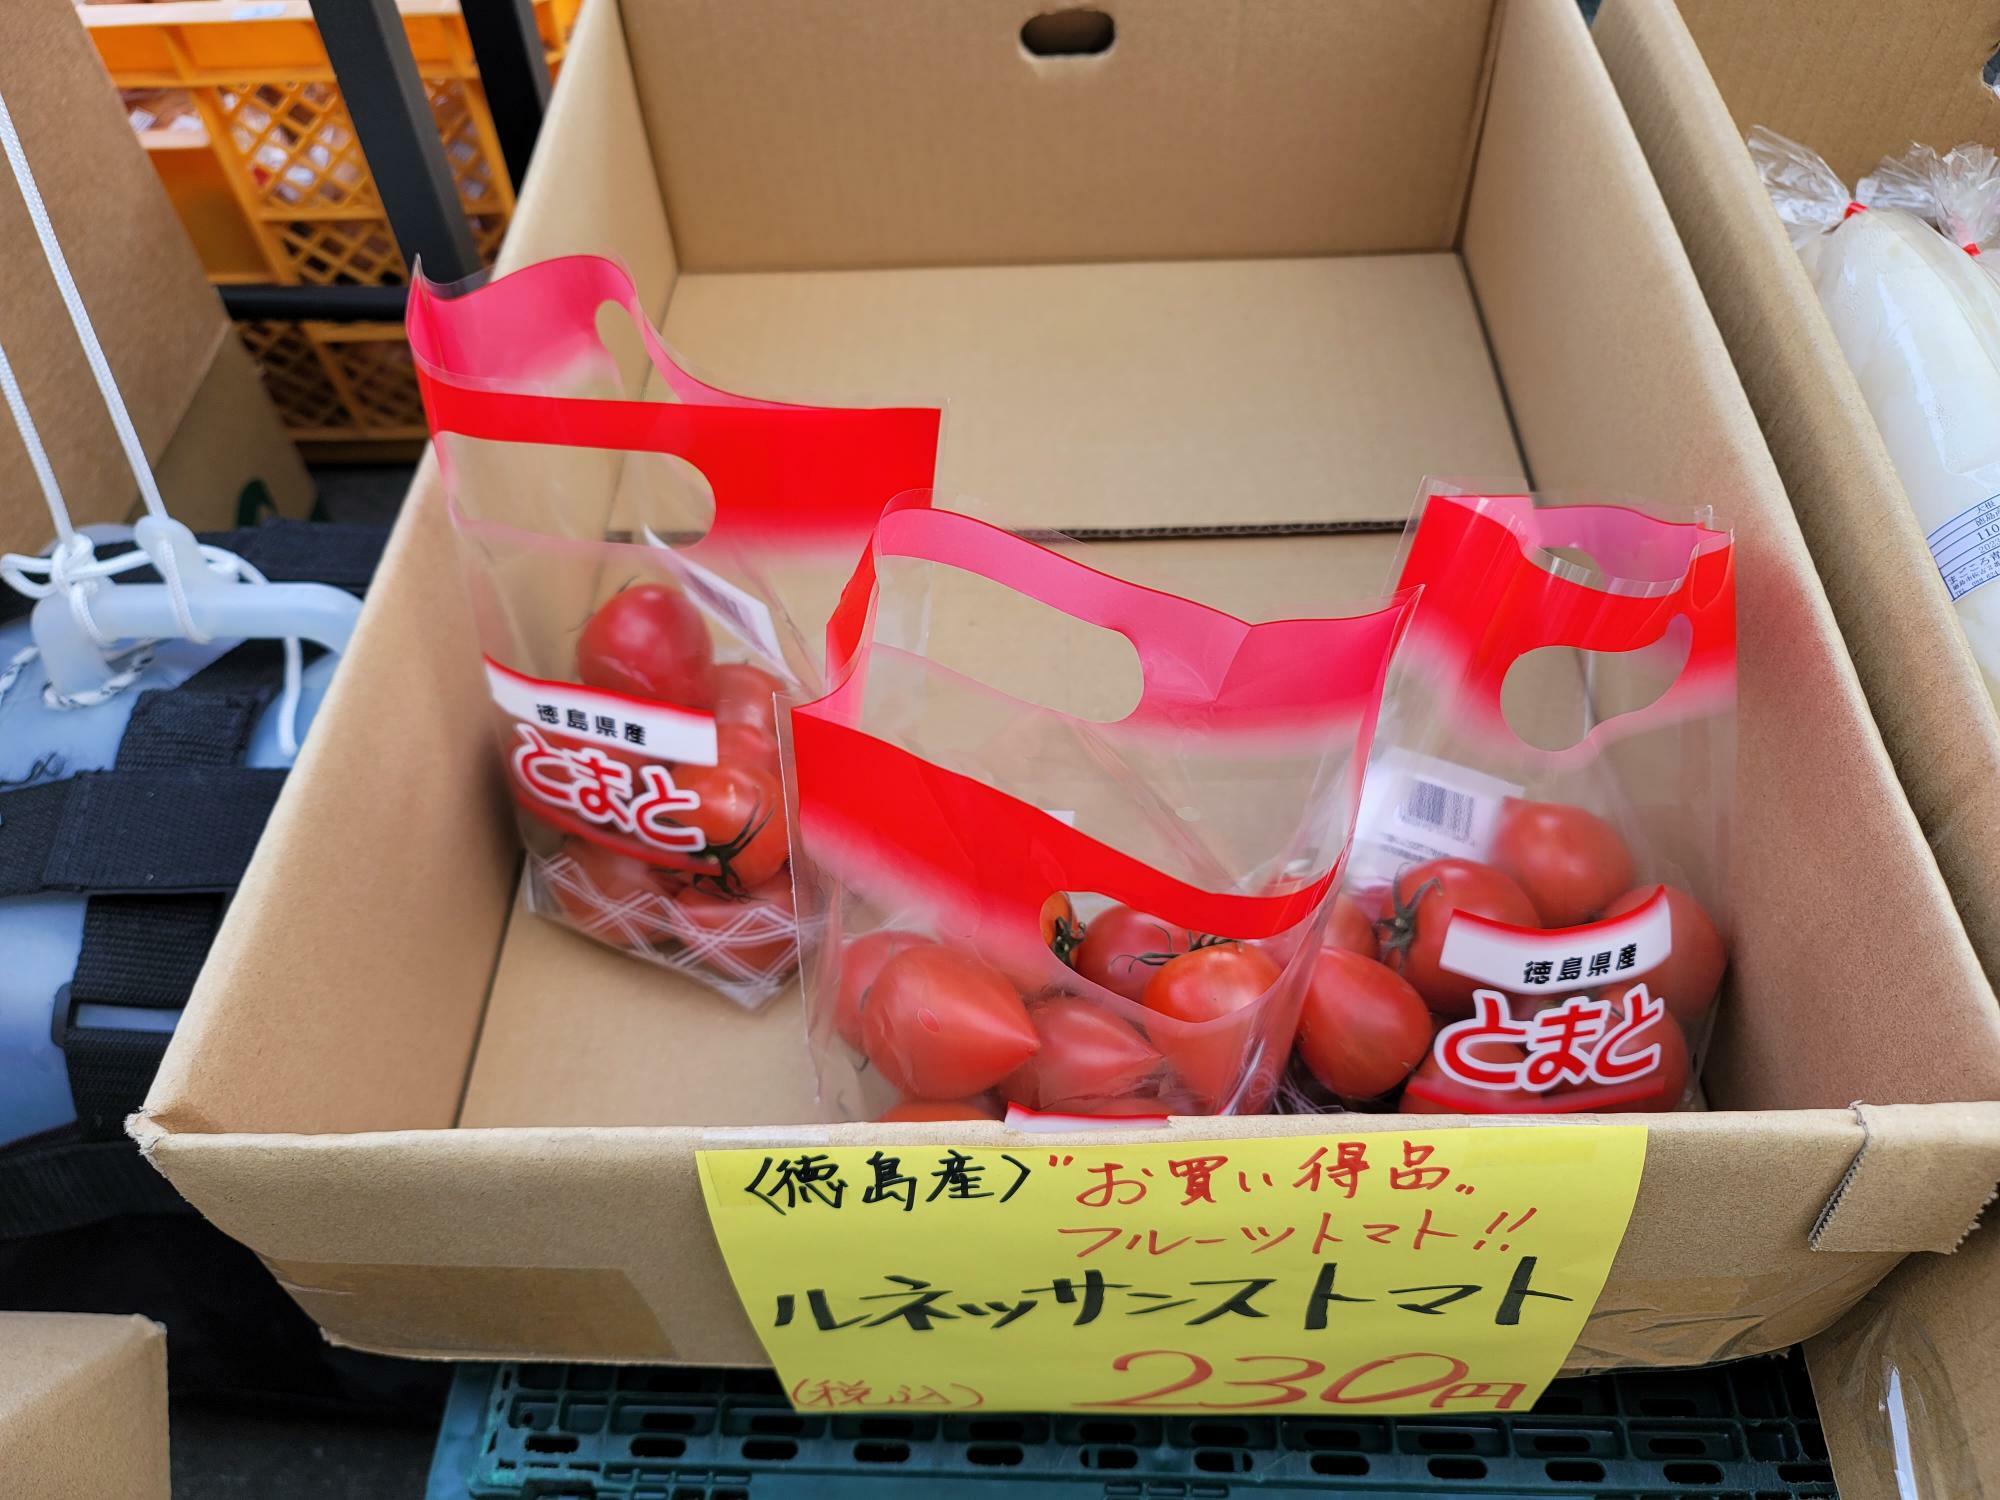 出店中の「まごころ青果店」で販売されていたトマト。